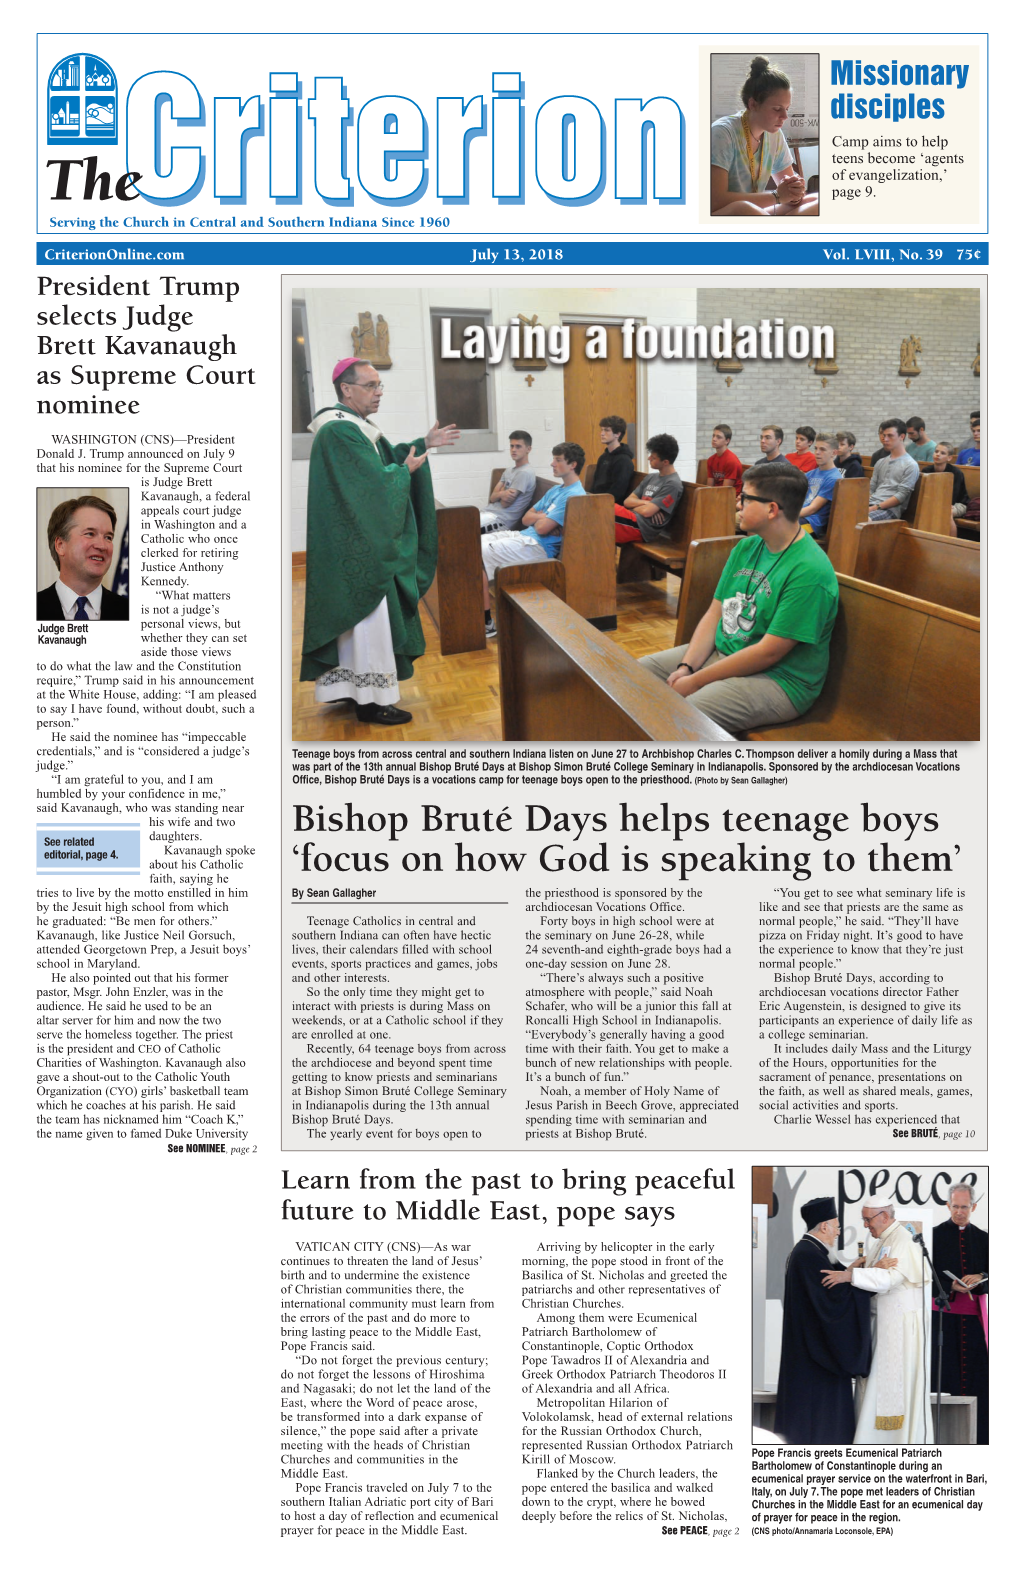 Bishop Bruté Days Helps Teenage Boys 'Focus on How God Is Speaking